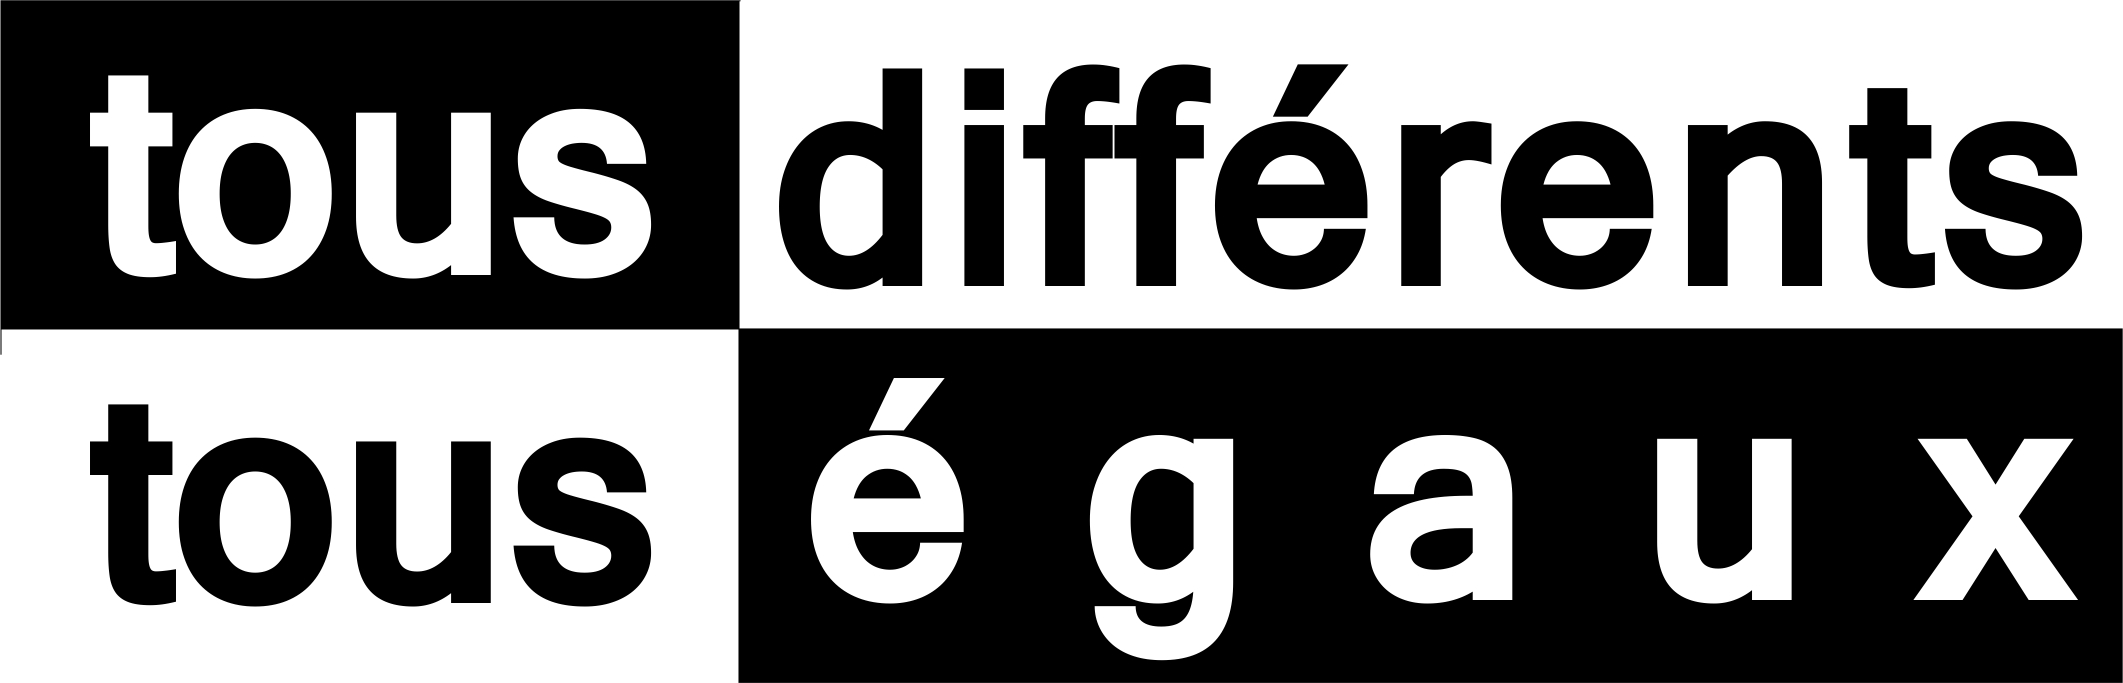 Logo tous différents tous égaux